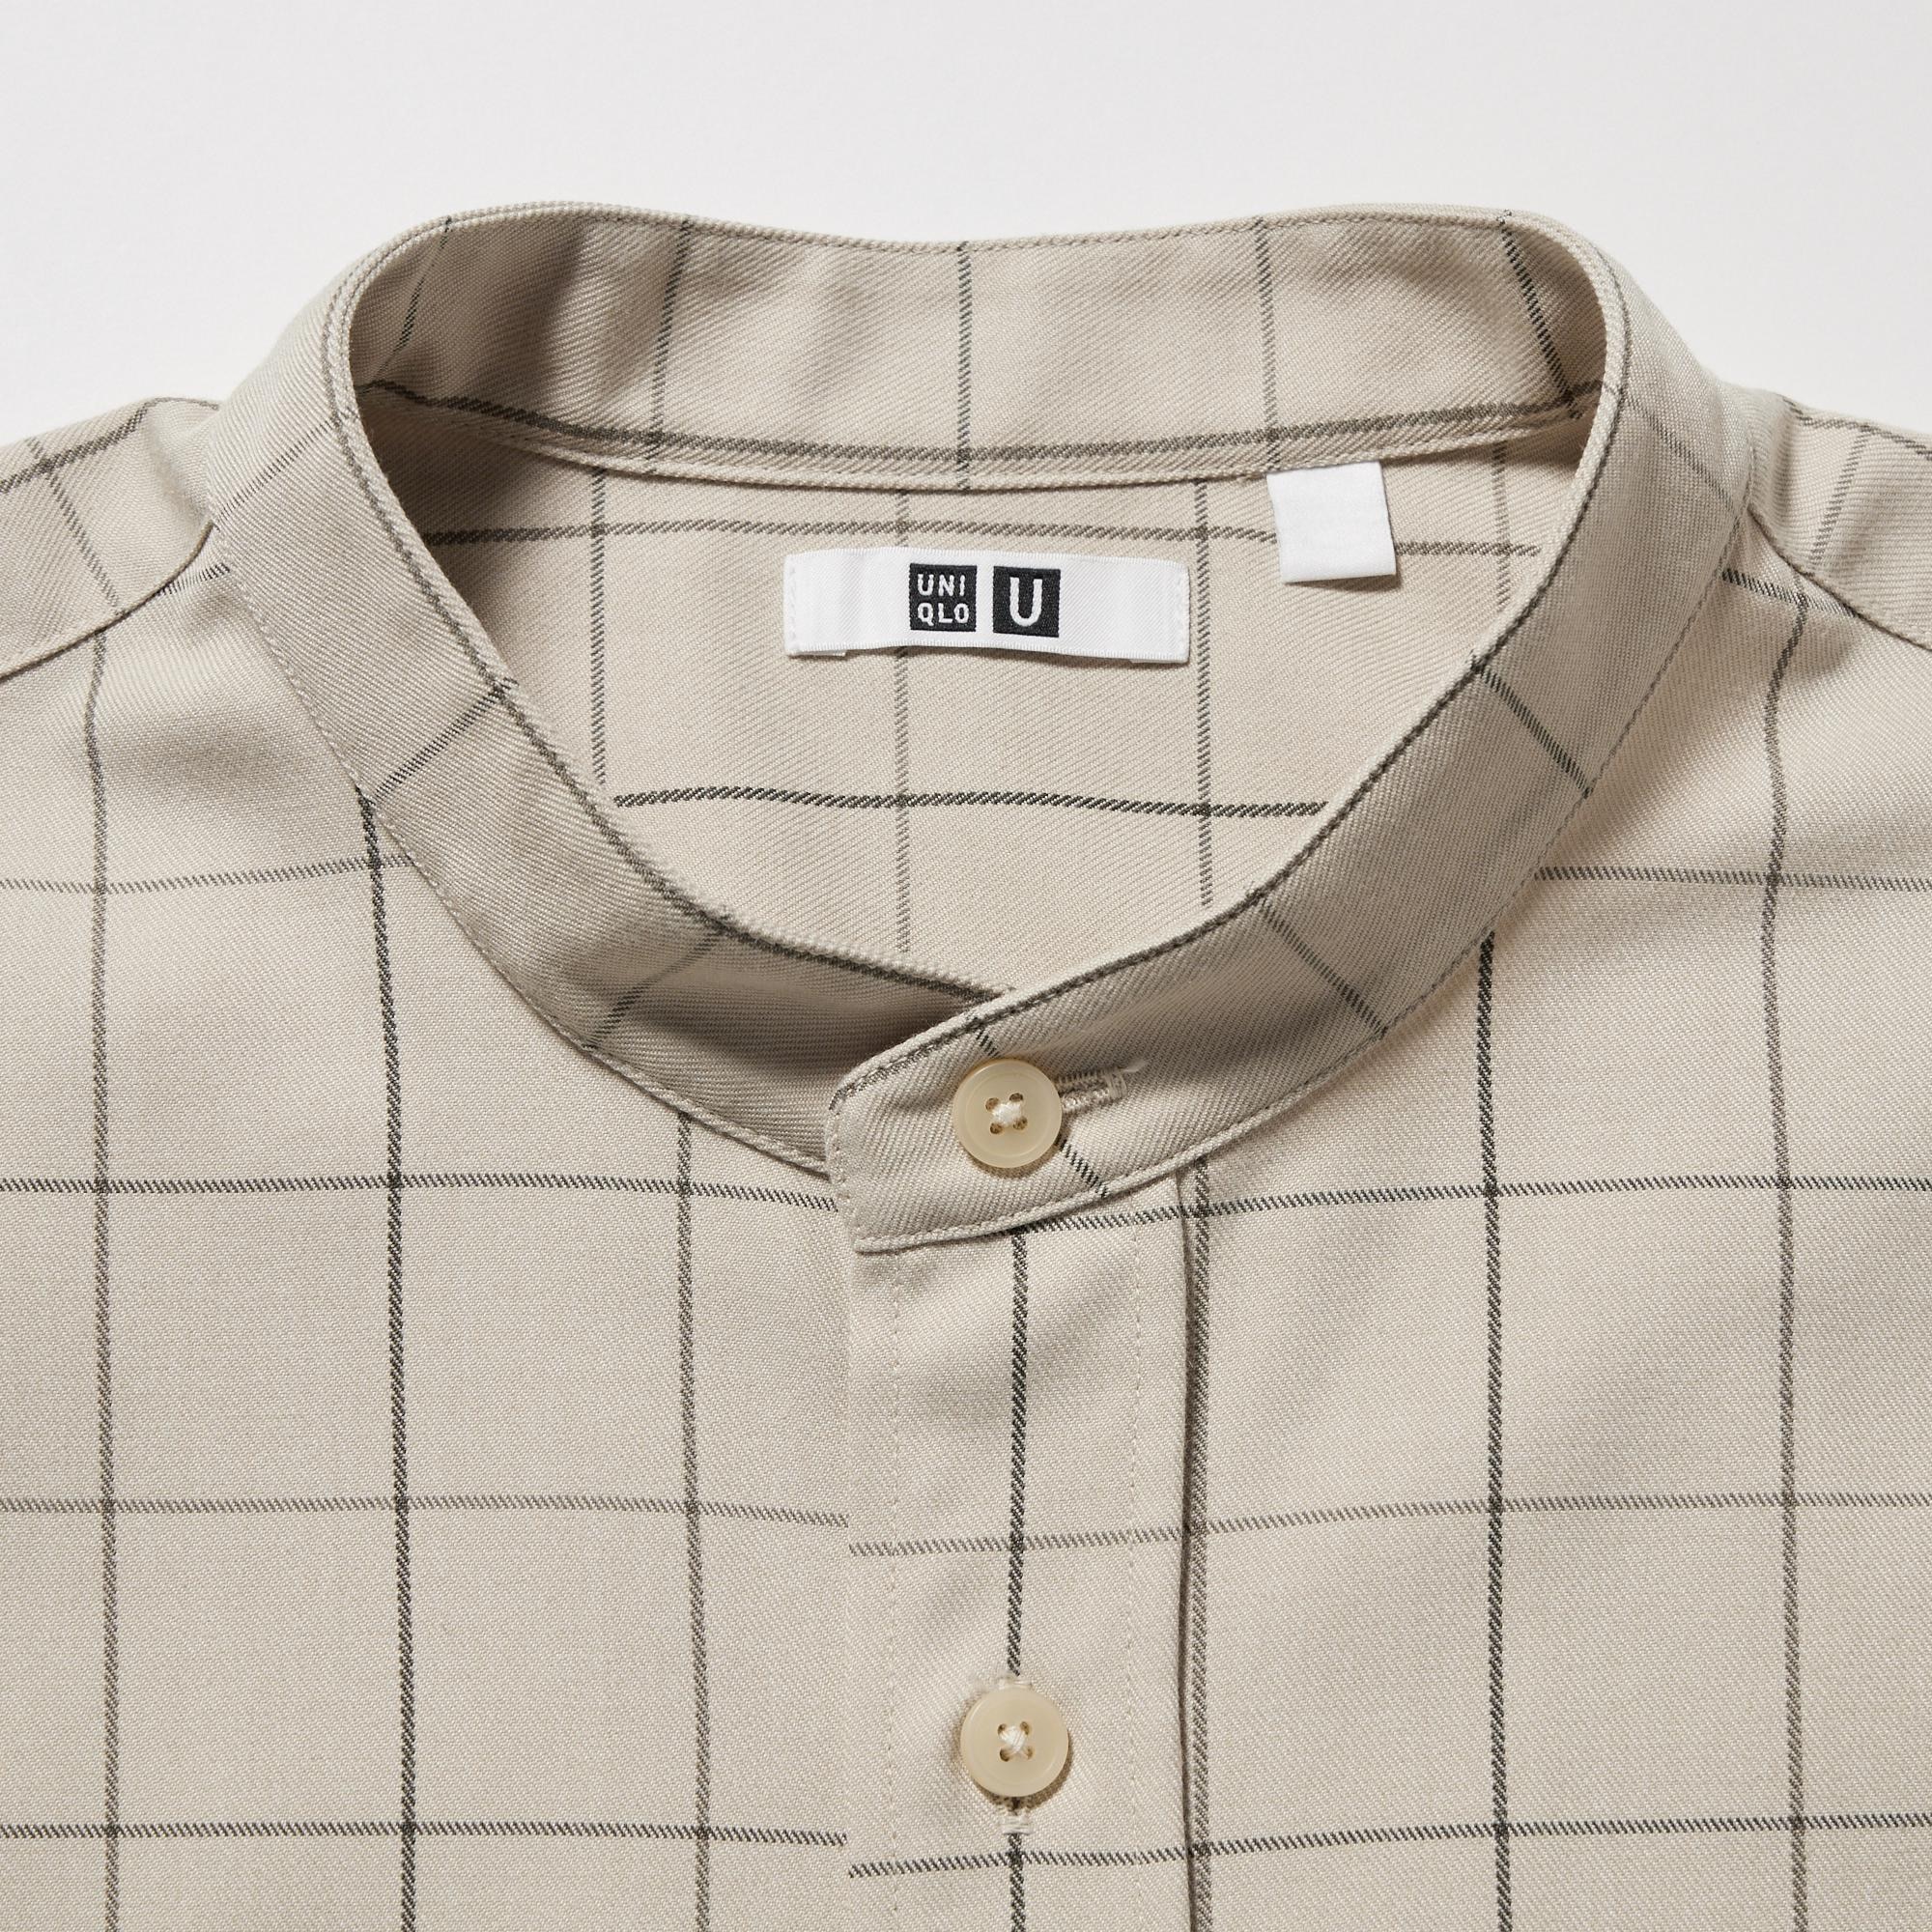 Uniqlo Mens Shirts  Men Flannel Checked Shirt Regular Collar Brown   Iniziative Immobiliari